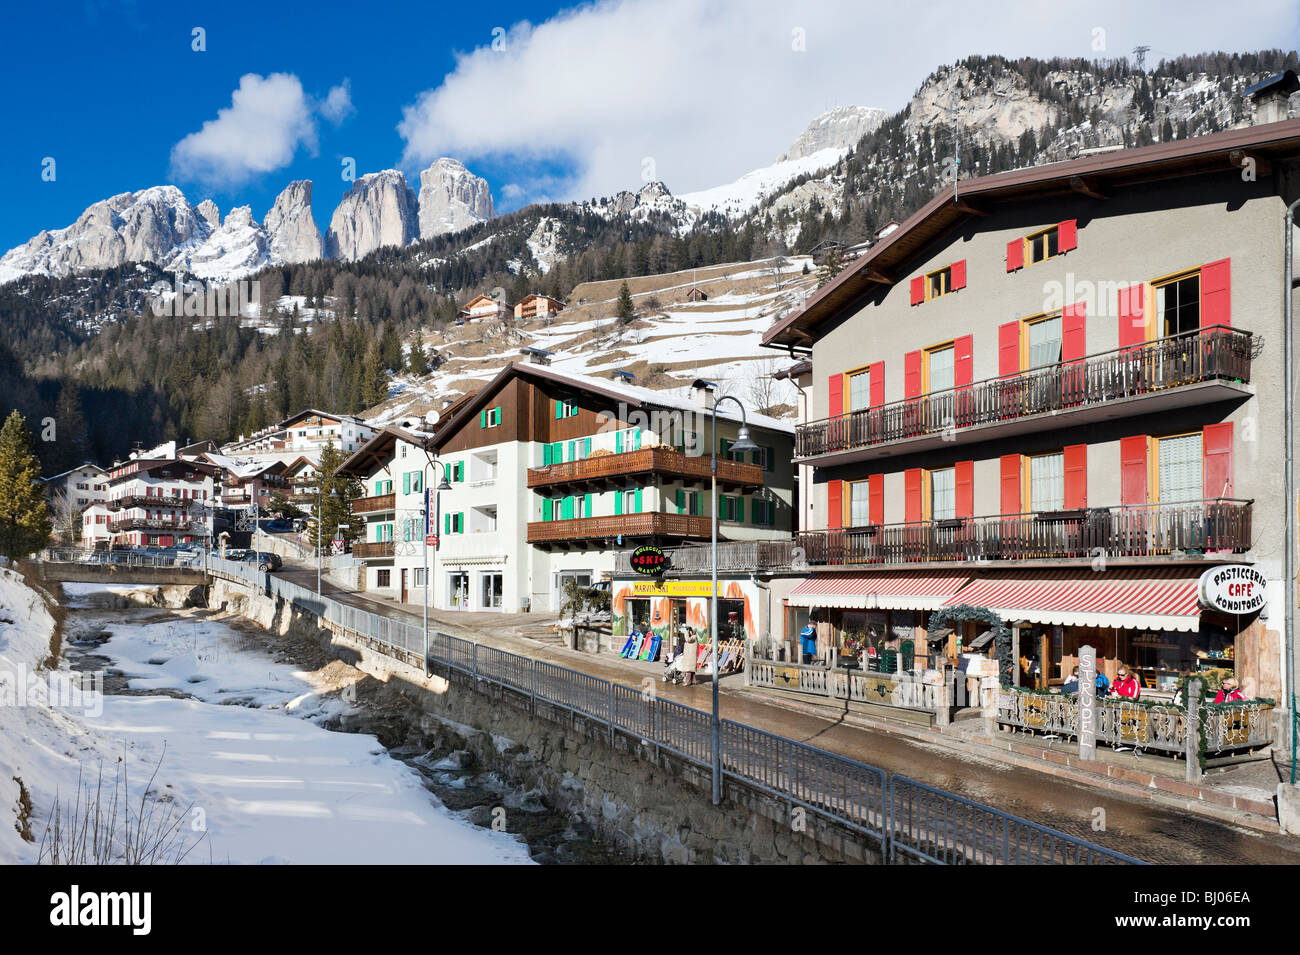 The village centre, Campitello, Val di Fassa, Dolomites, Italy Stock Photo